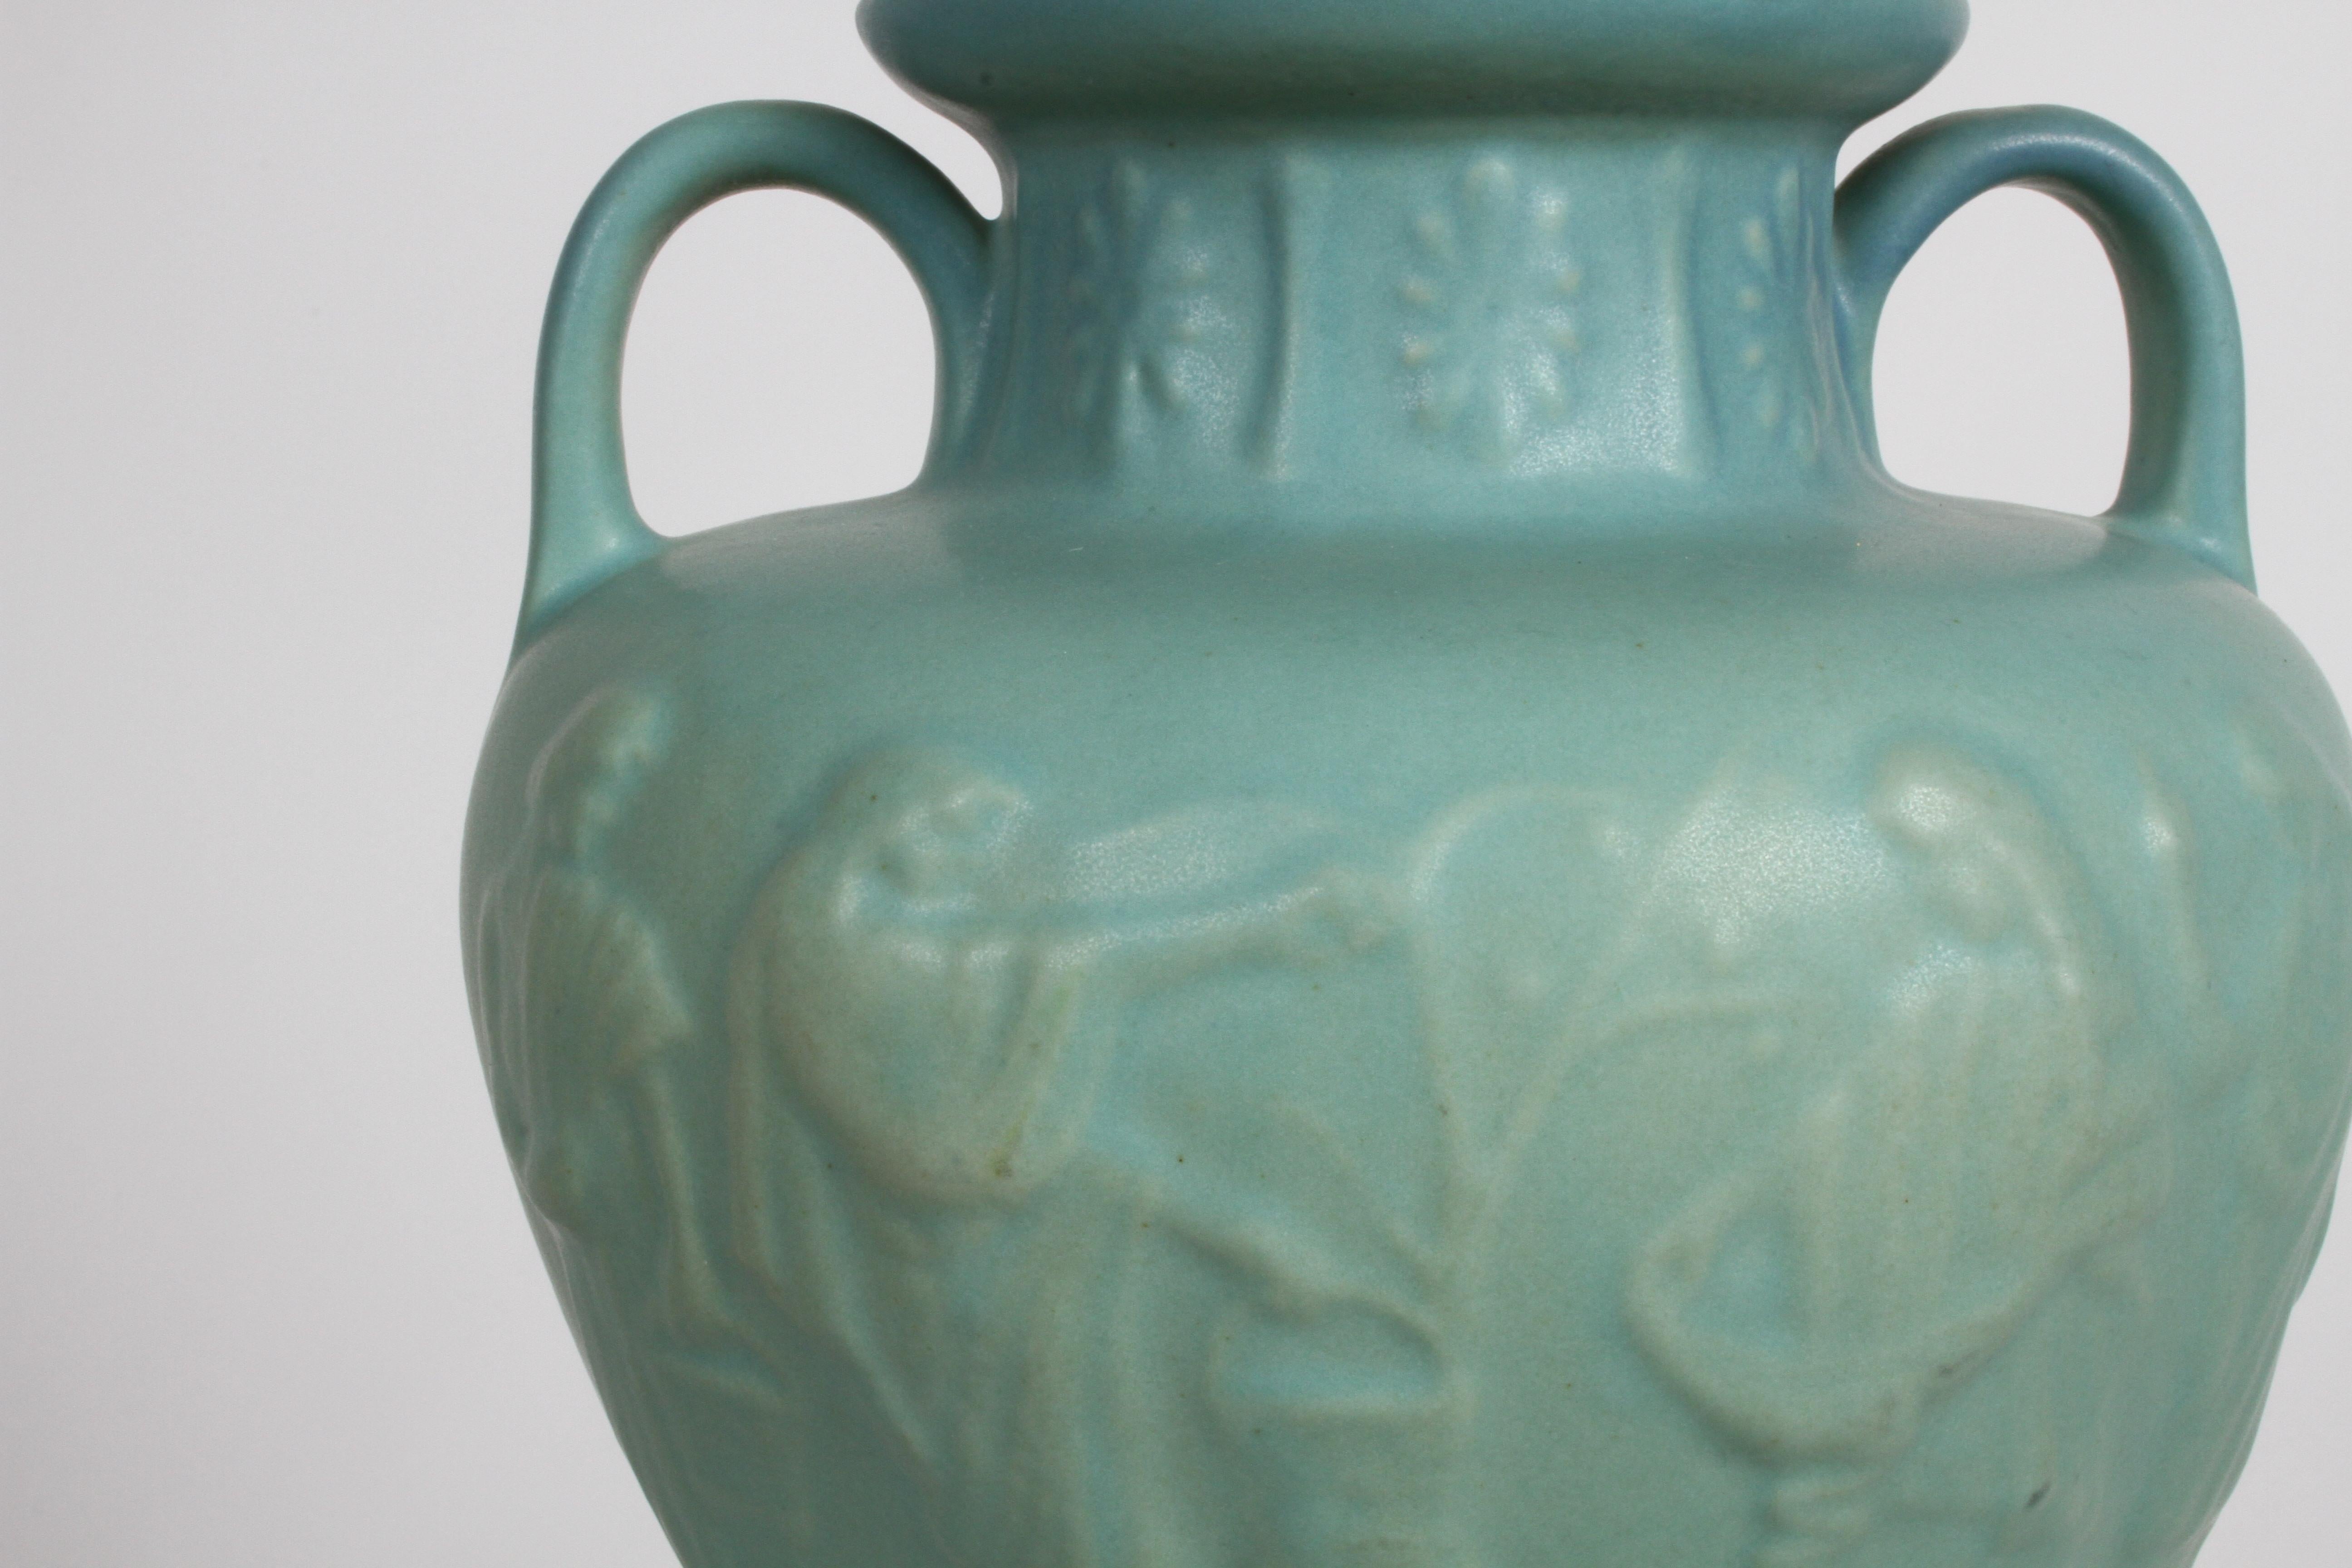 Urne grecque Van Briggle des années 1980 à glaçure ming turquoise signée par la potière Dorothy Ruff (D.R.). L'urne a une épaule haute avec des poignées en boucle, des figures en bas-relief sur la circonférence, et un motif floral sur le col court